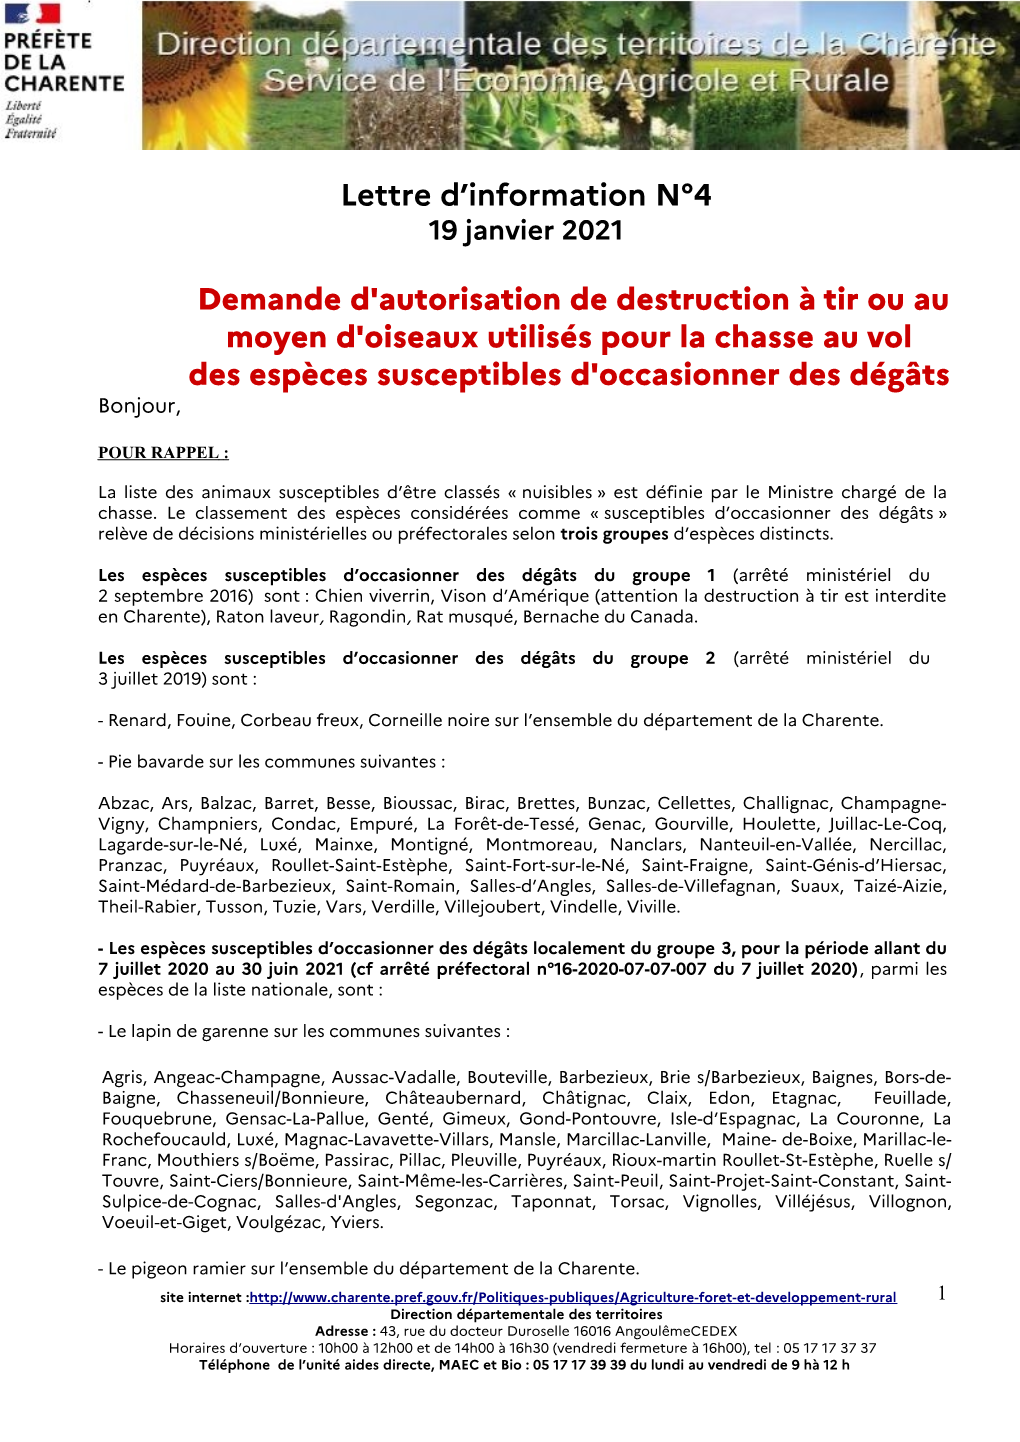 2021 Lettre D'information De La DDT N°4 Déclaration De Destruction Des